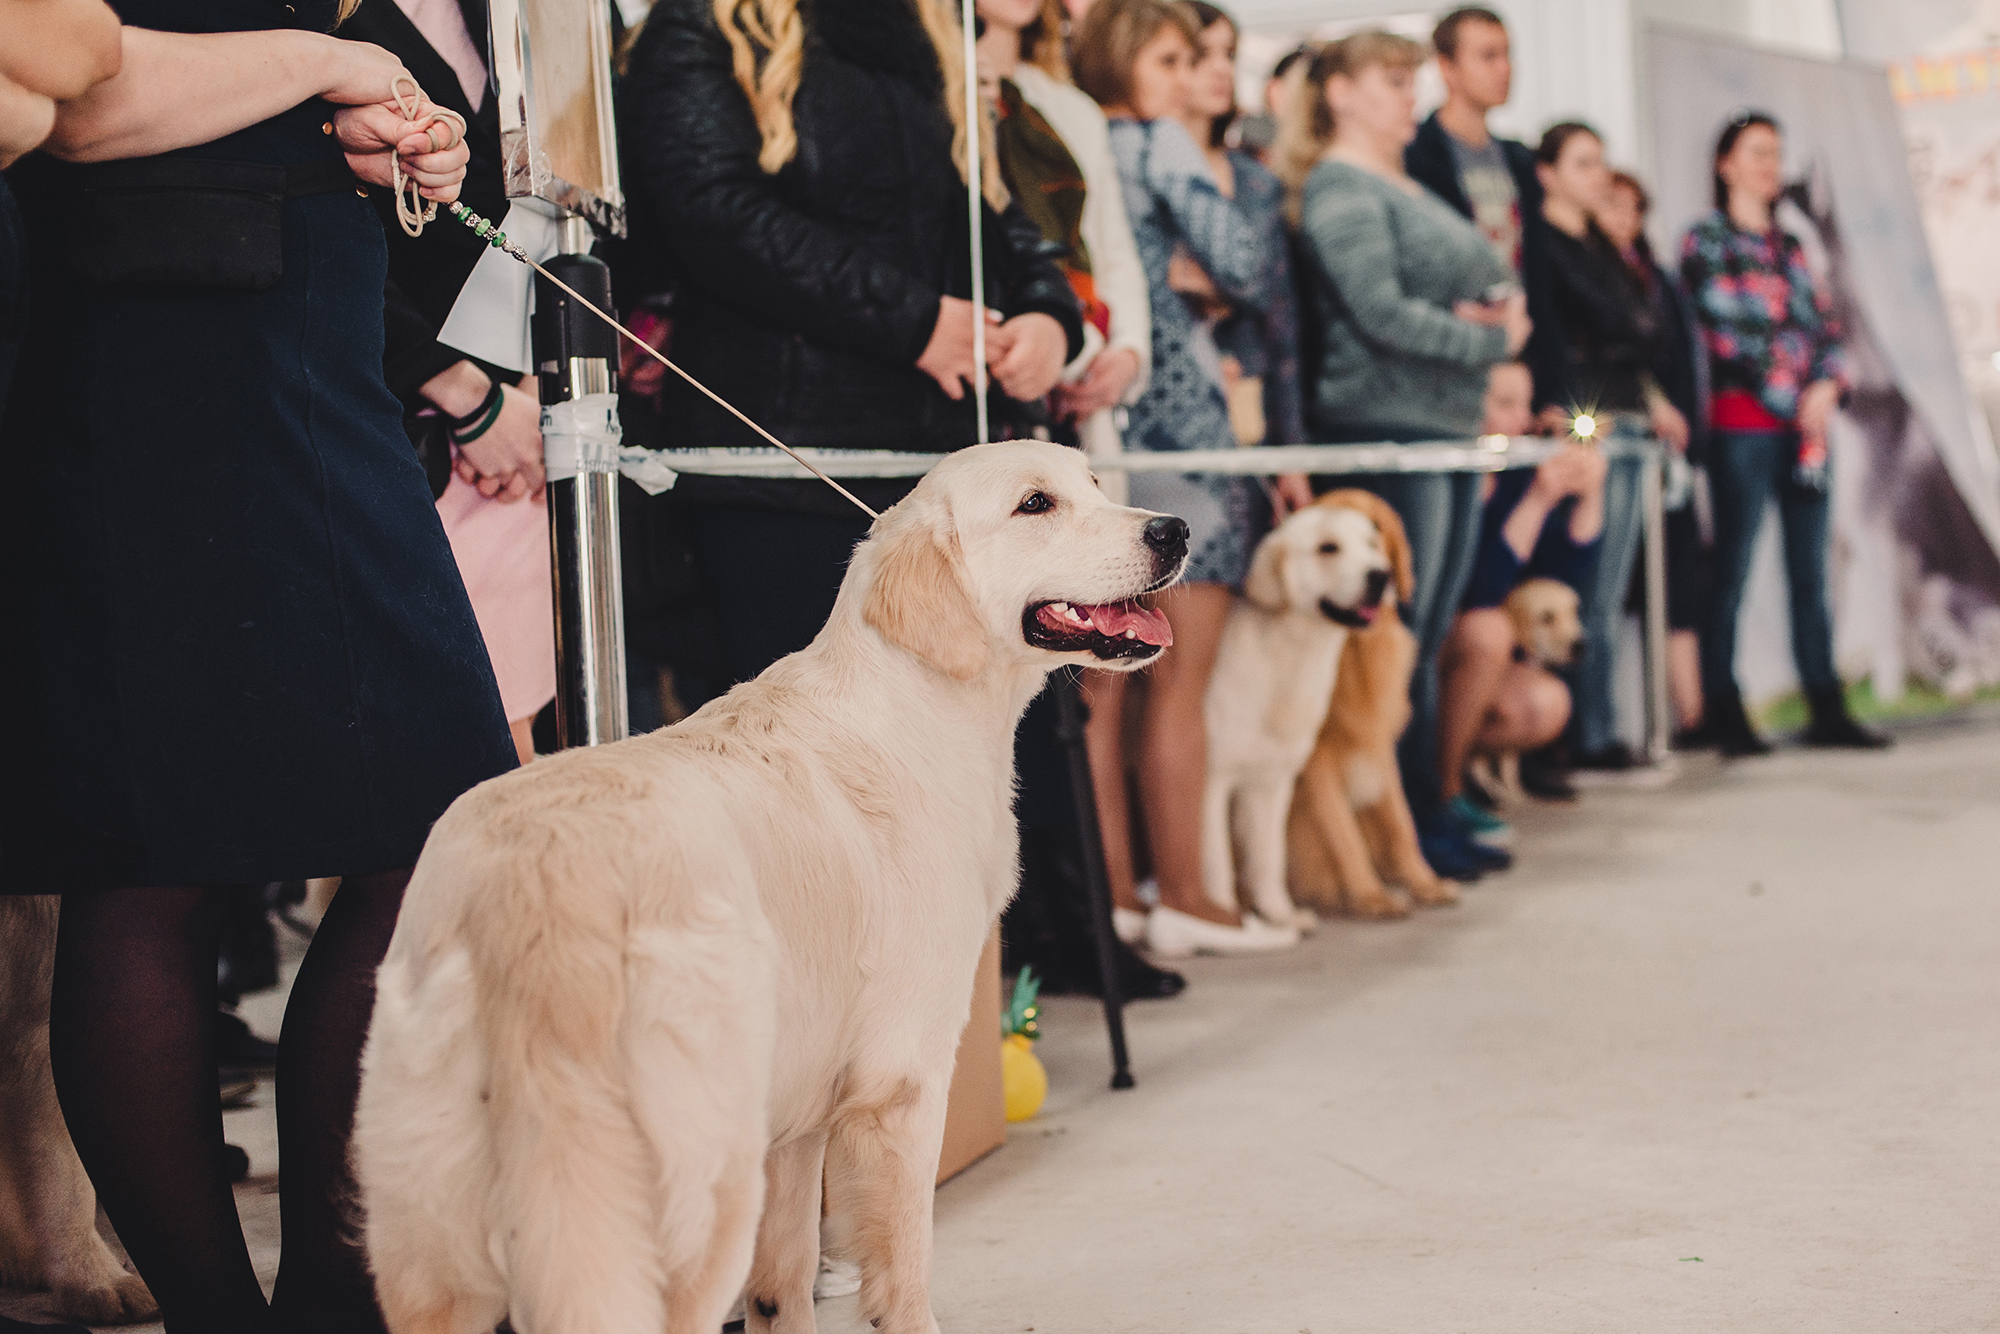 На собачьей выставке можно посмотреть и поснимать разные породы собак — это помогает разнообразить портфолио